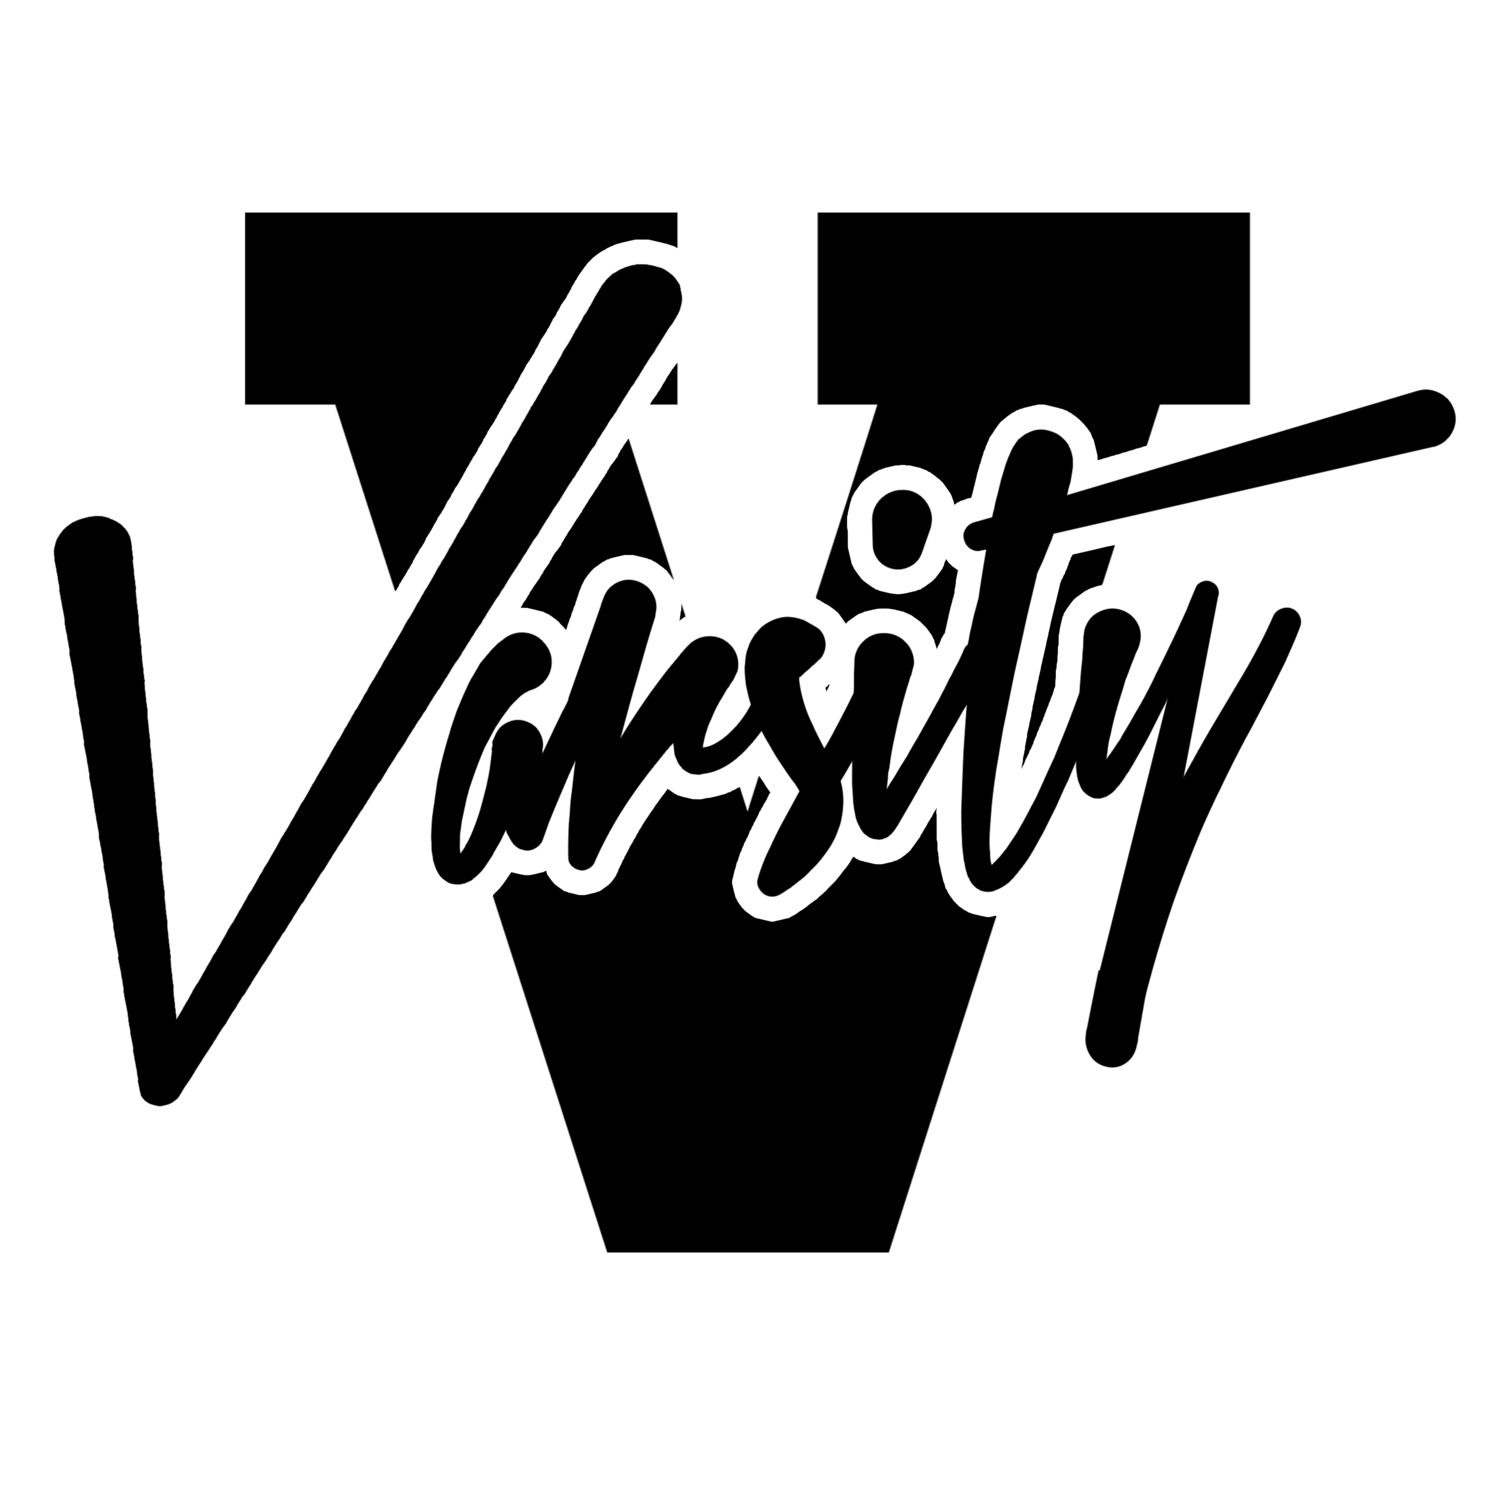 Youtube clipart skateboard. Varsity shades 